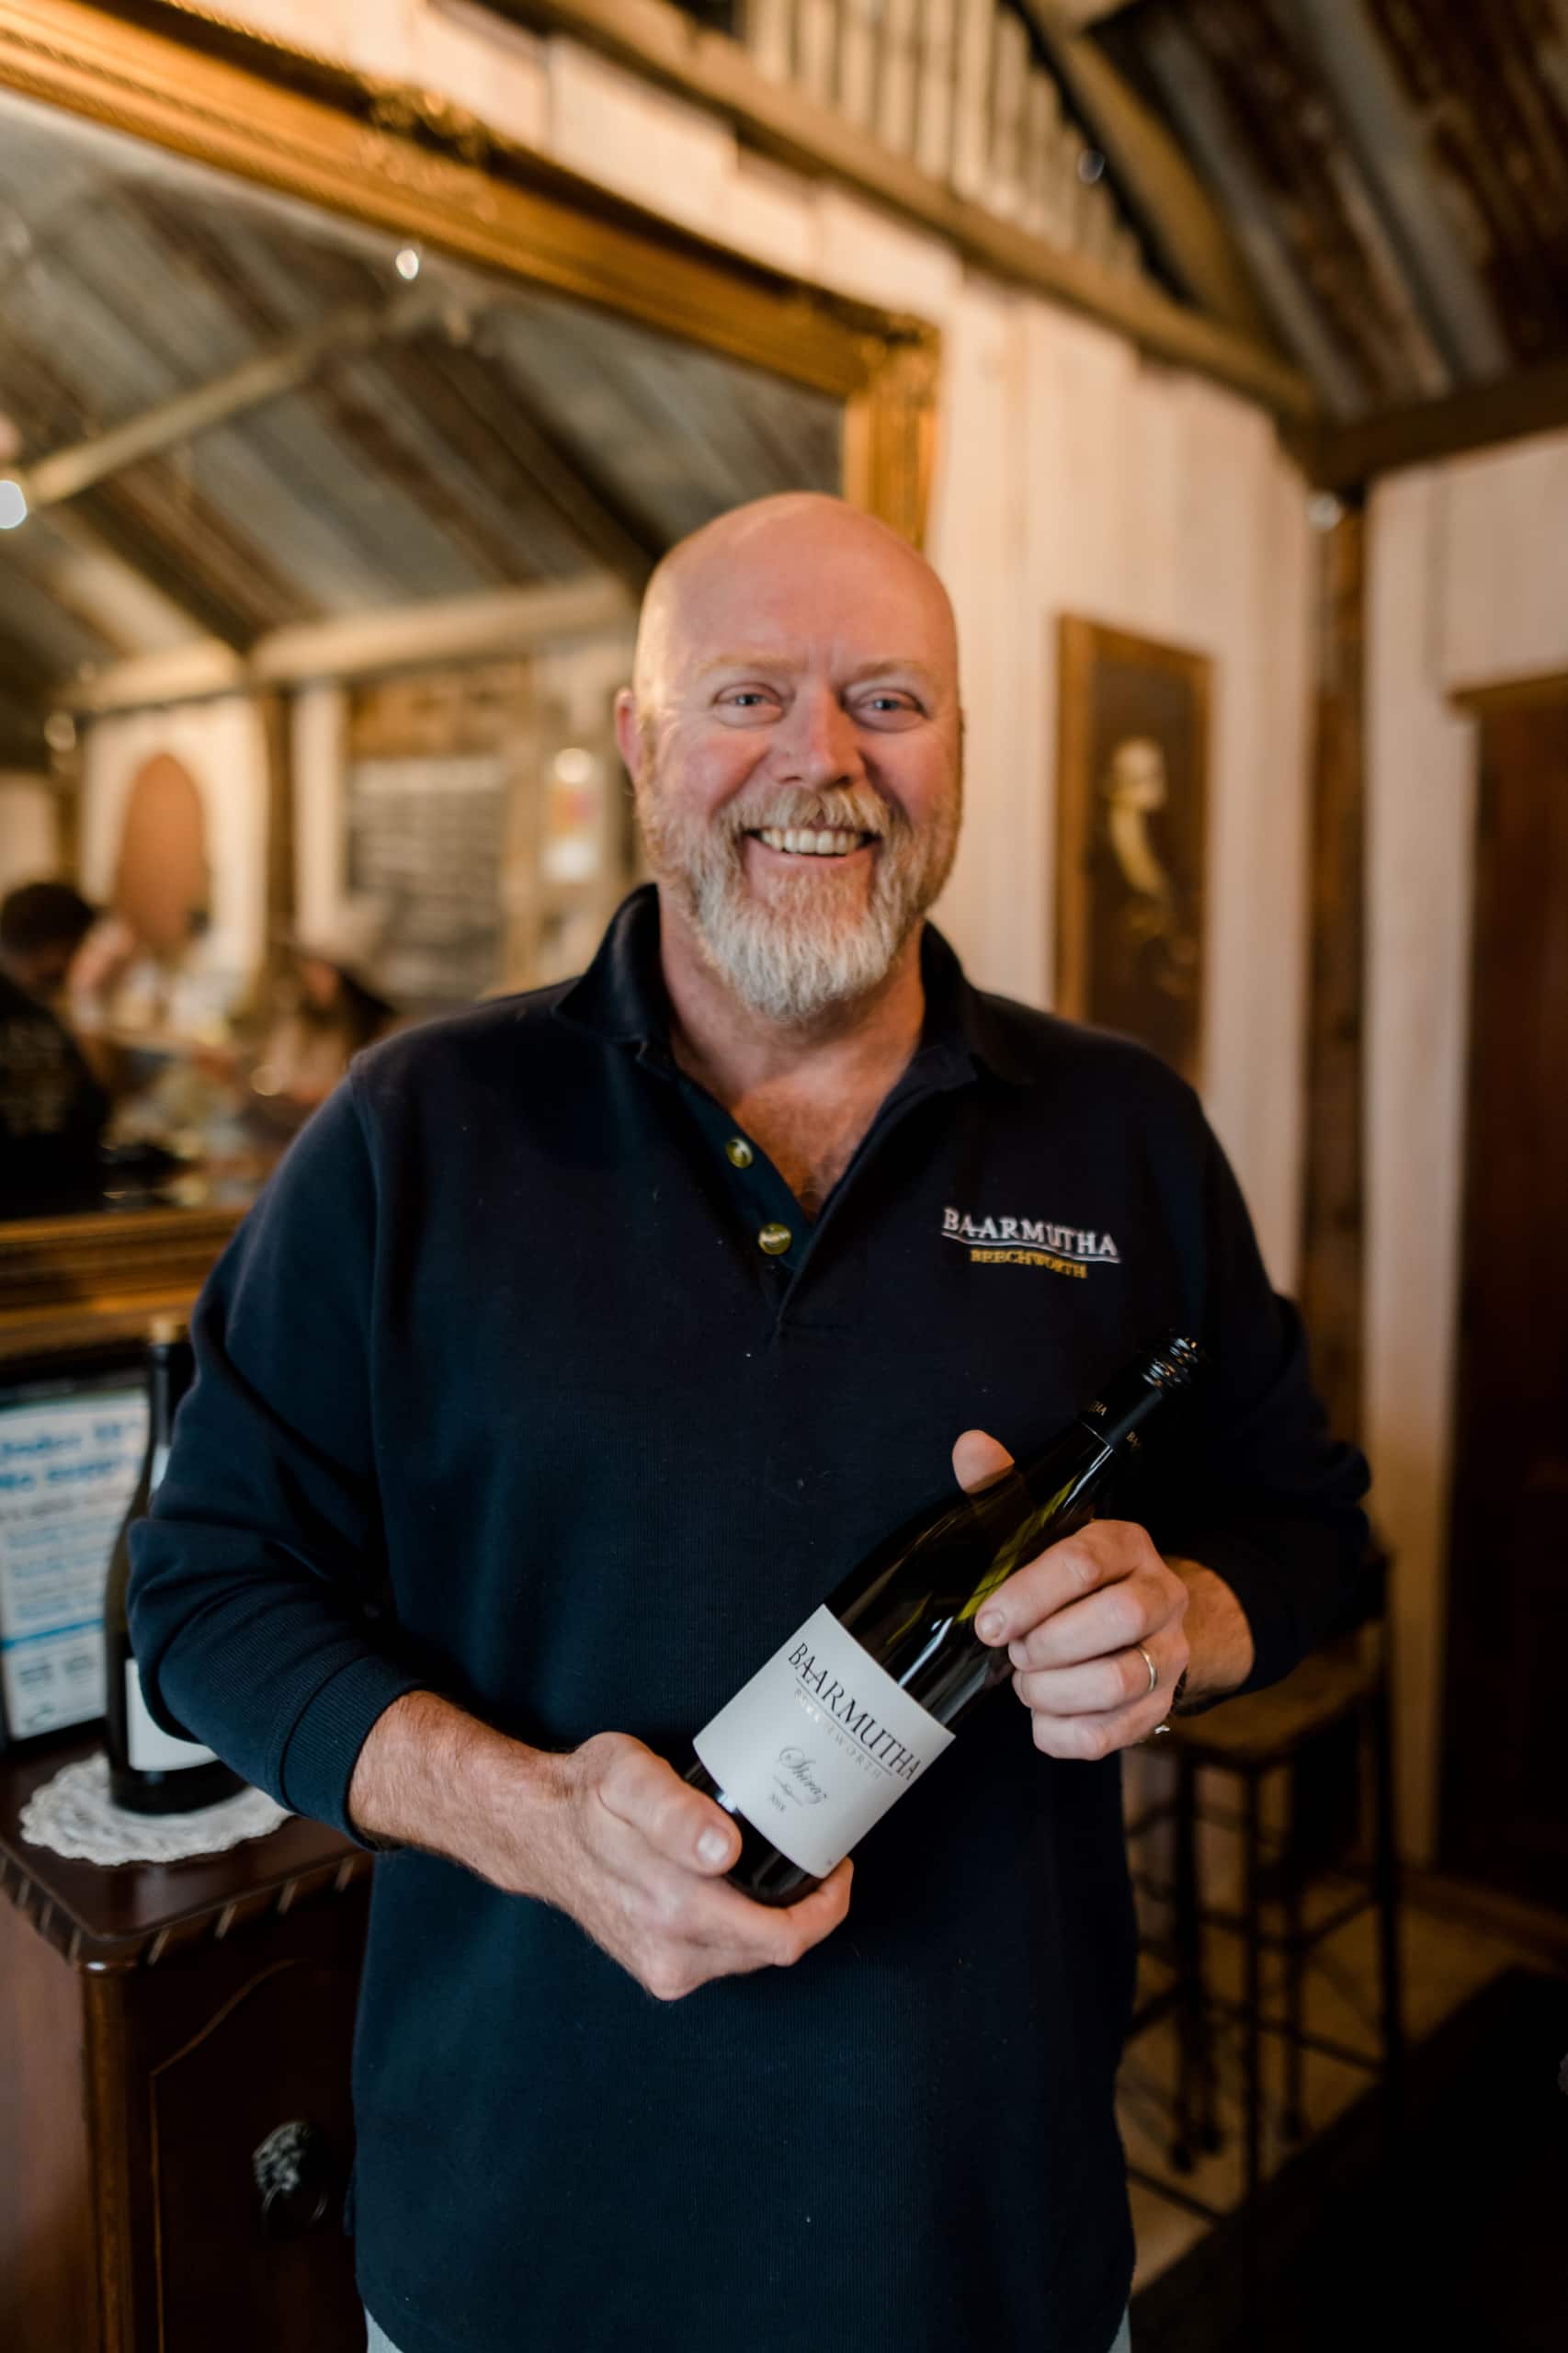 Vinny Webb, the winemaker and owner of Baarmutha Wines